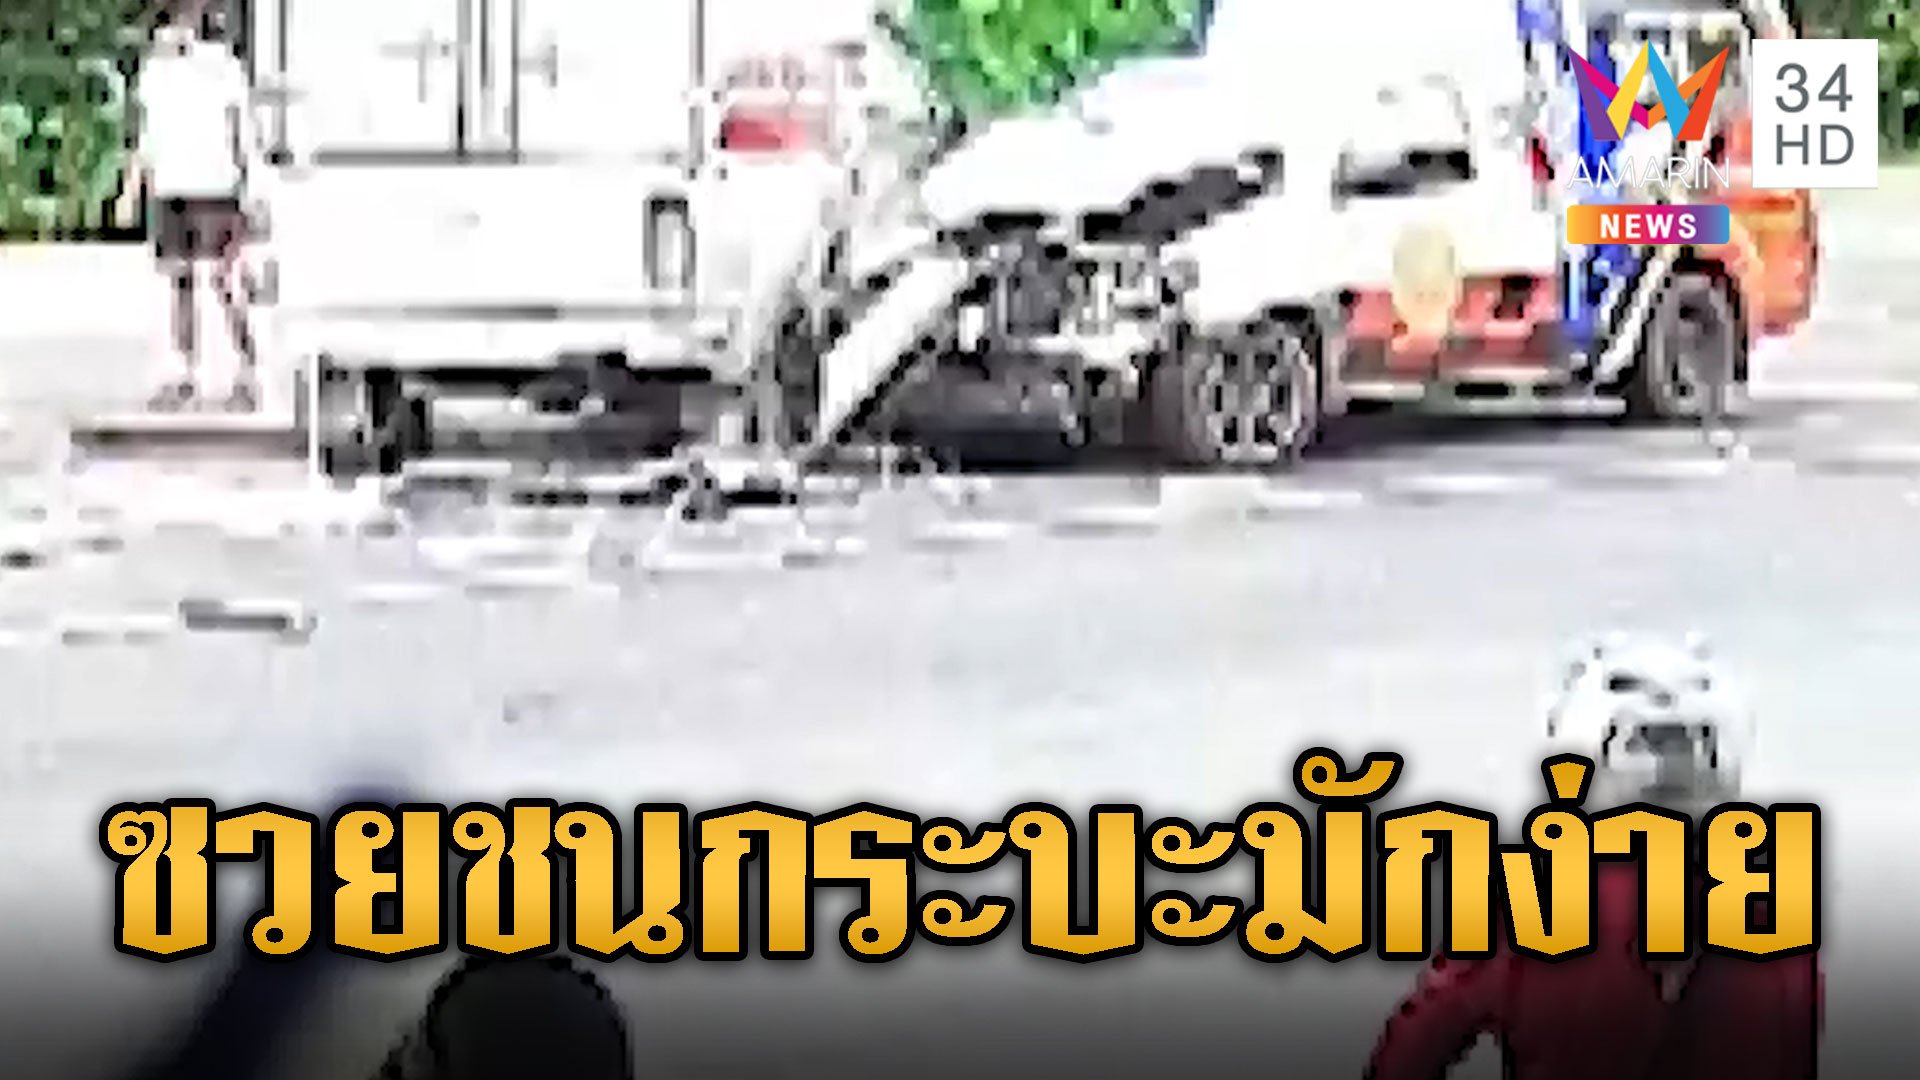 กู้ภัยชนสนั่น! กระบะกลับรถตัดหน้าที่ต้องห้าม | ข่าวอรุณอมรินทร์ | 25 ก.ค. 67 | AMARIN TVHD34